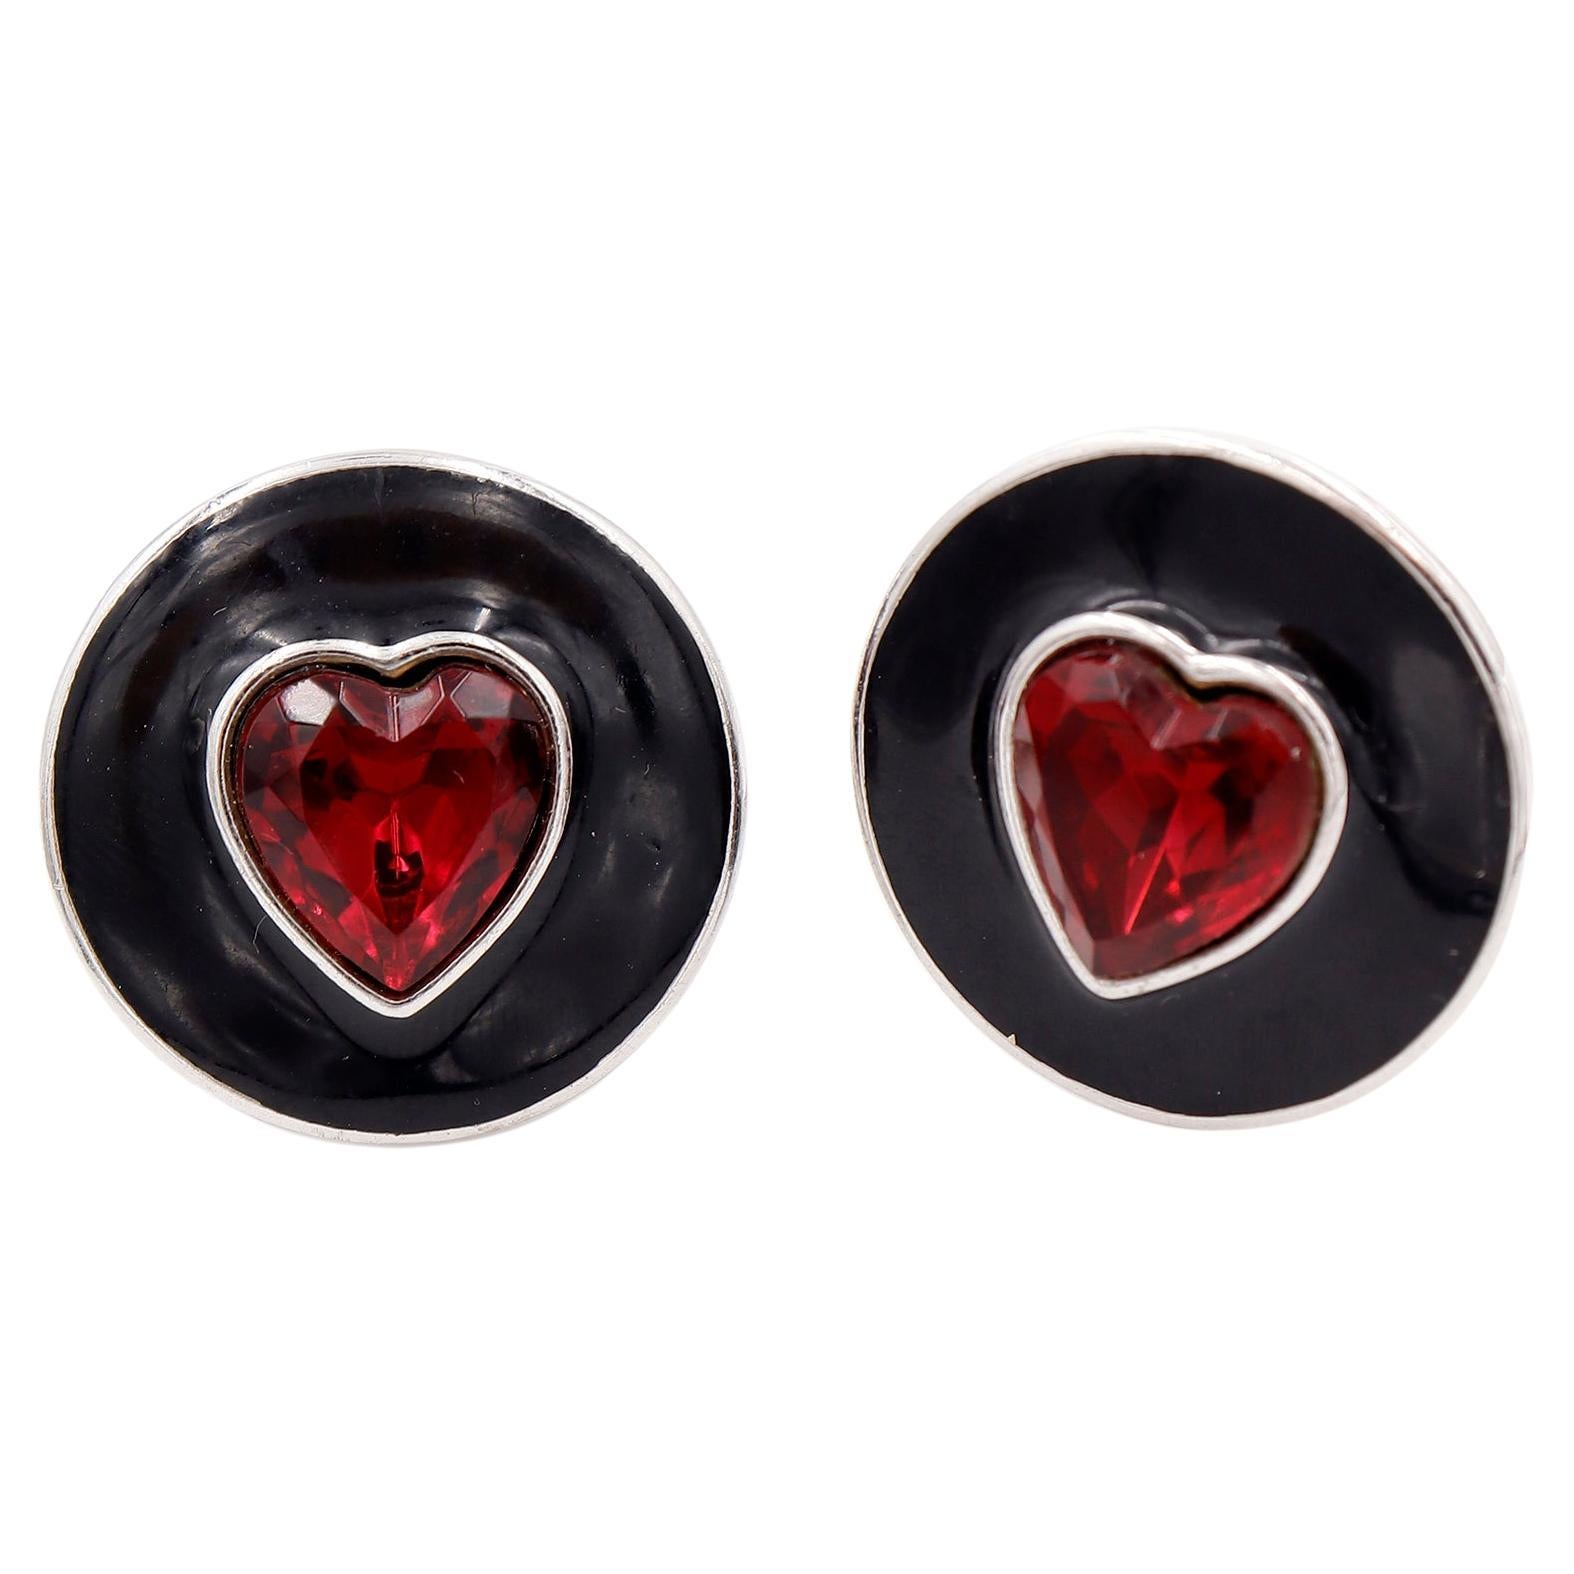 Yves Saint Laurent Vintage YSL Red Crystal Heart & Black Enamel Silver Earrings